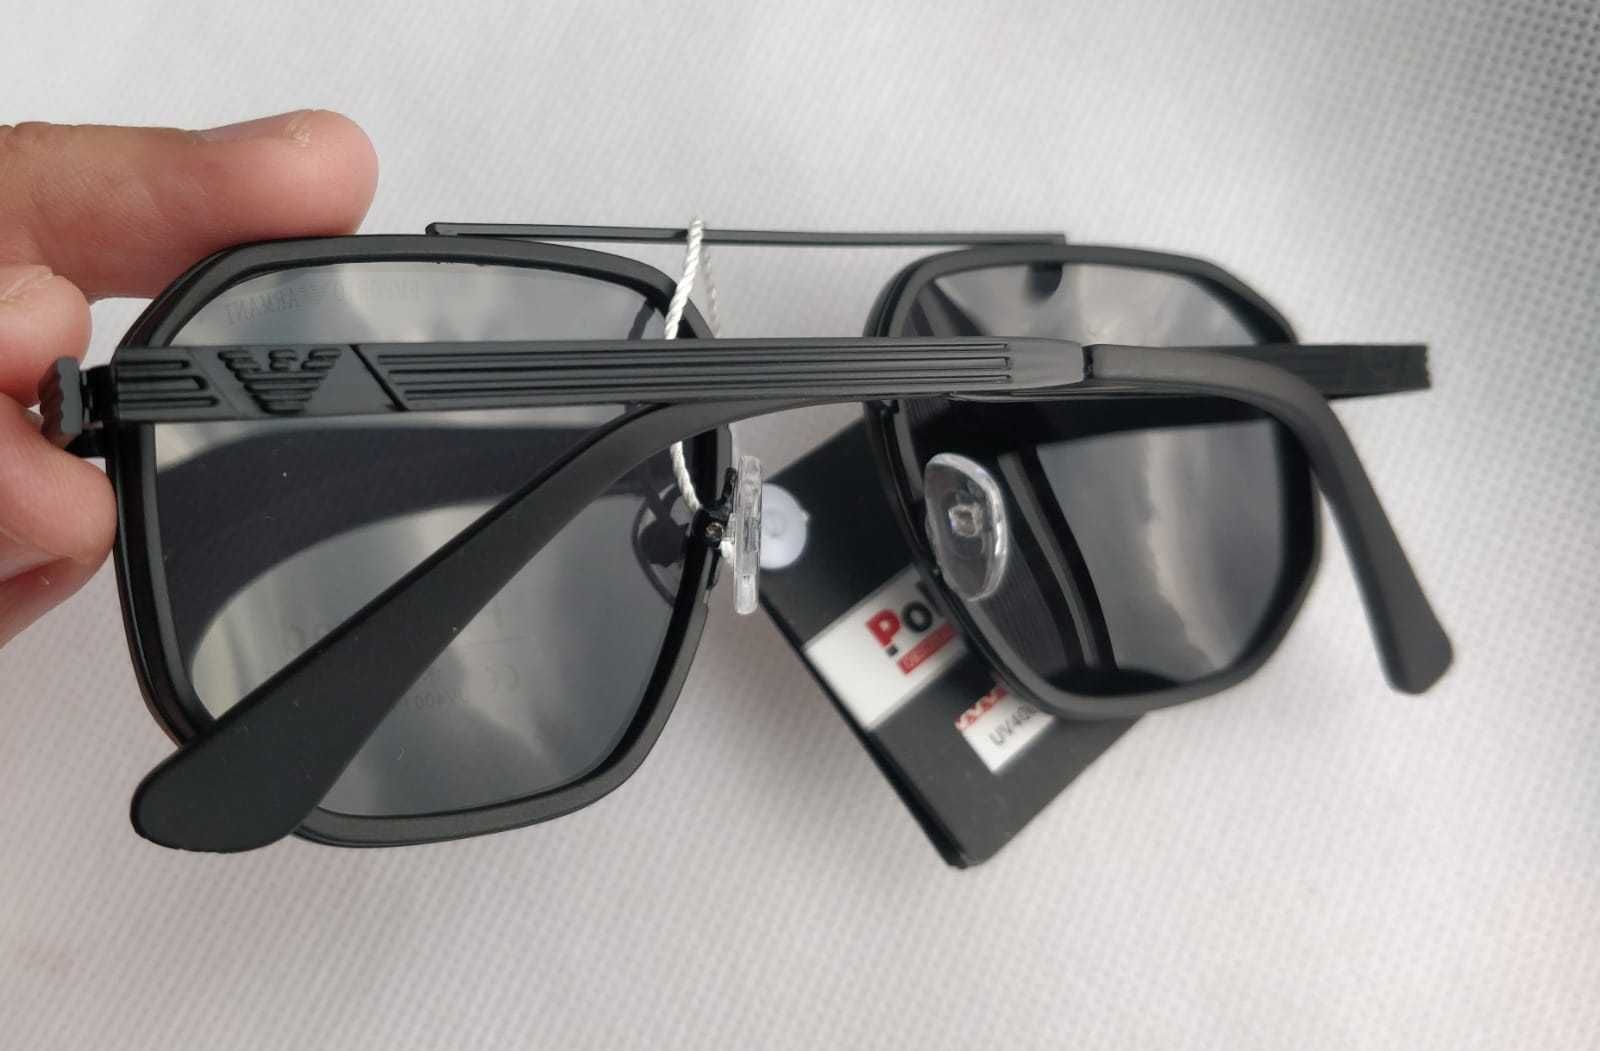 Ochelari de soare Armani Polarizati, negri model 1